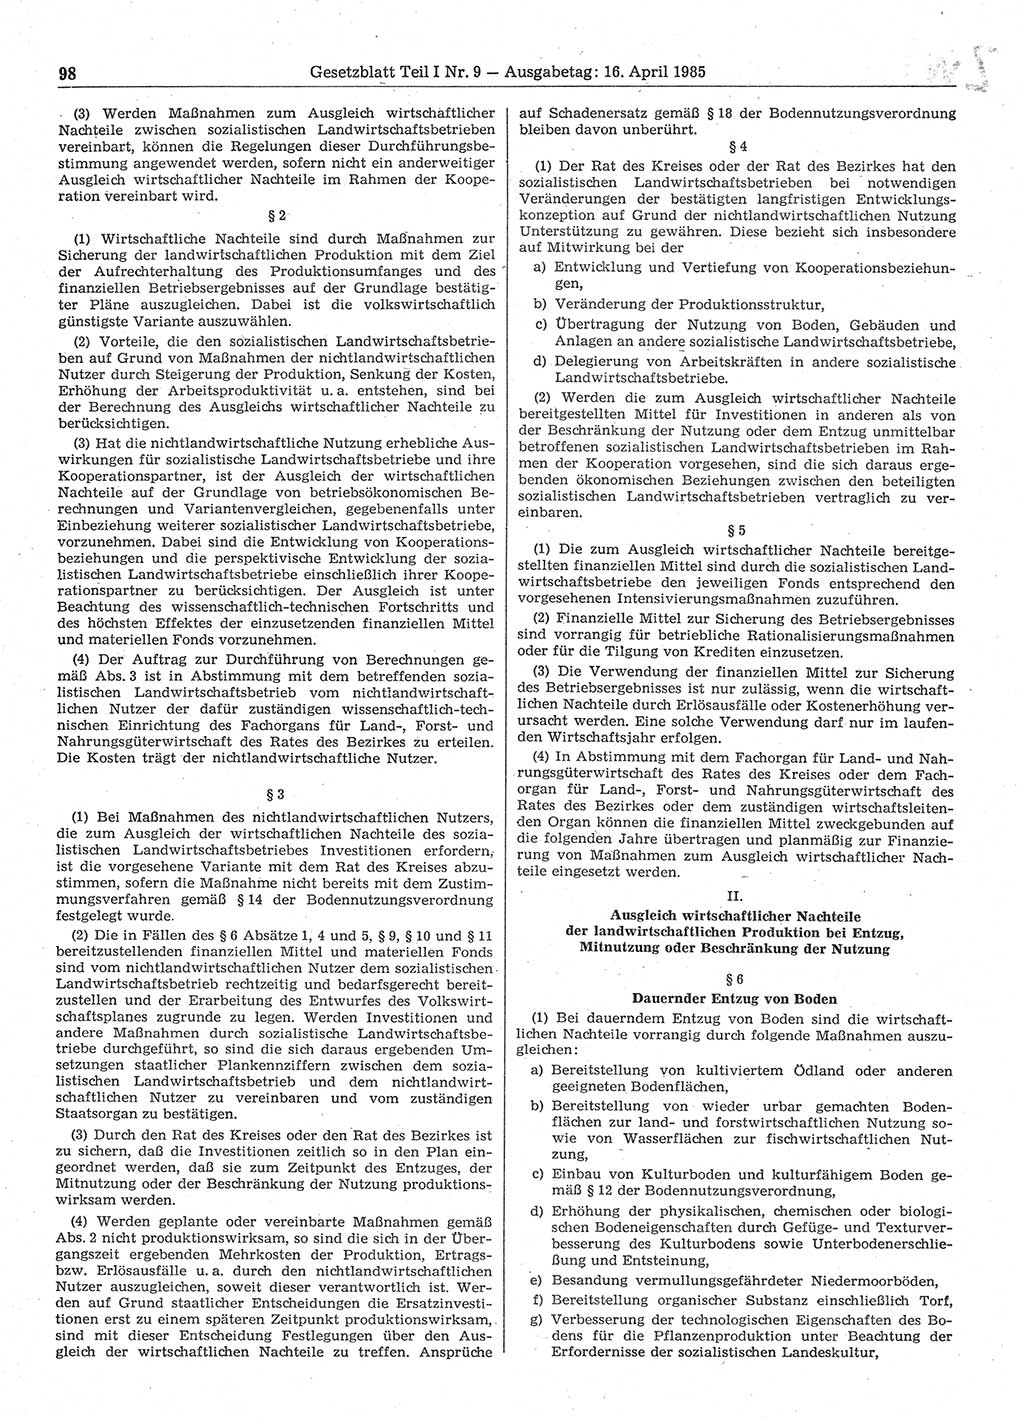 Gesetzblatt (GBl.) der Deutschen Demokratischen Republik (DDR) Teil Ⅰ 1985, Seite 98 (GBl. DDR Ⅰ 1985, S. 98)